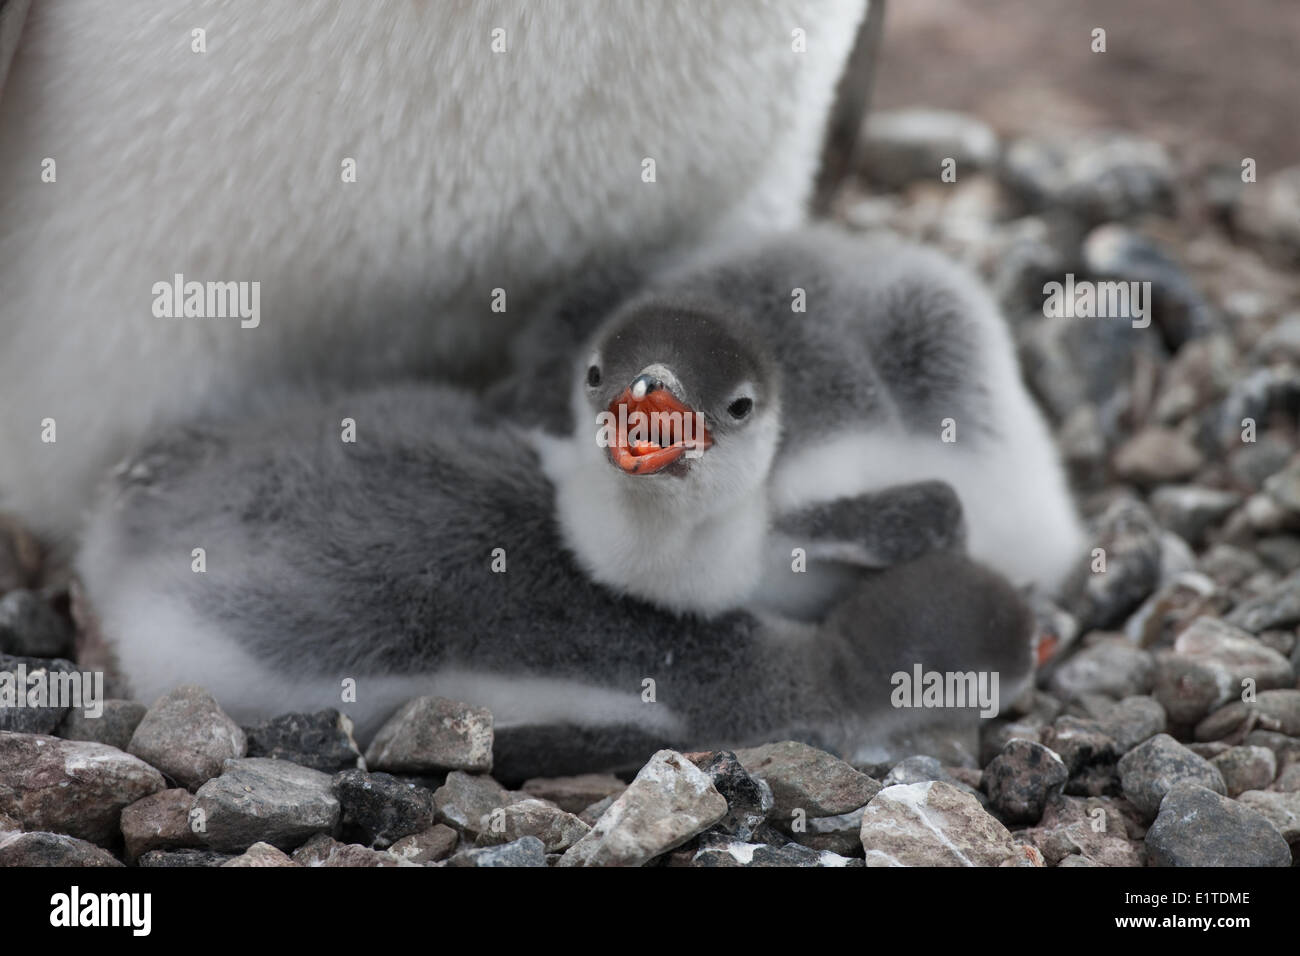 Questi pinguini Gentoo pulcini sono probabilmente 2-3 settimane di età. Foto Stock